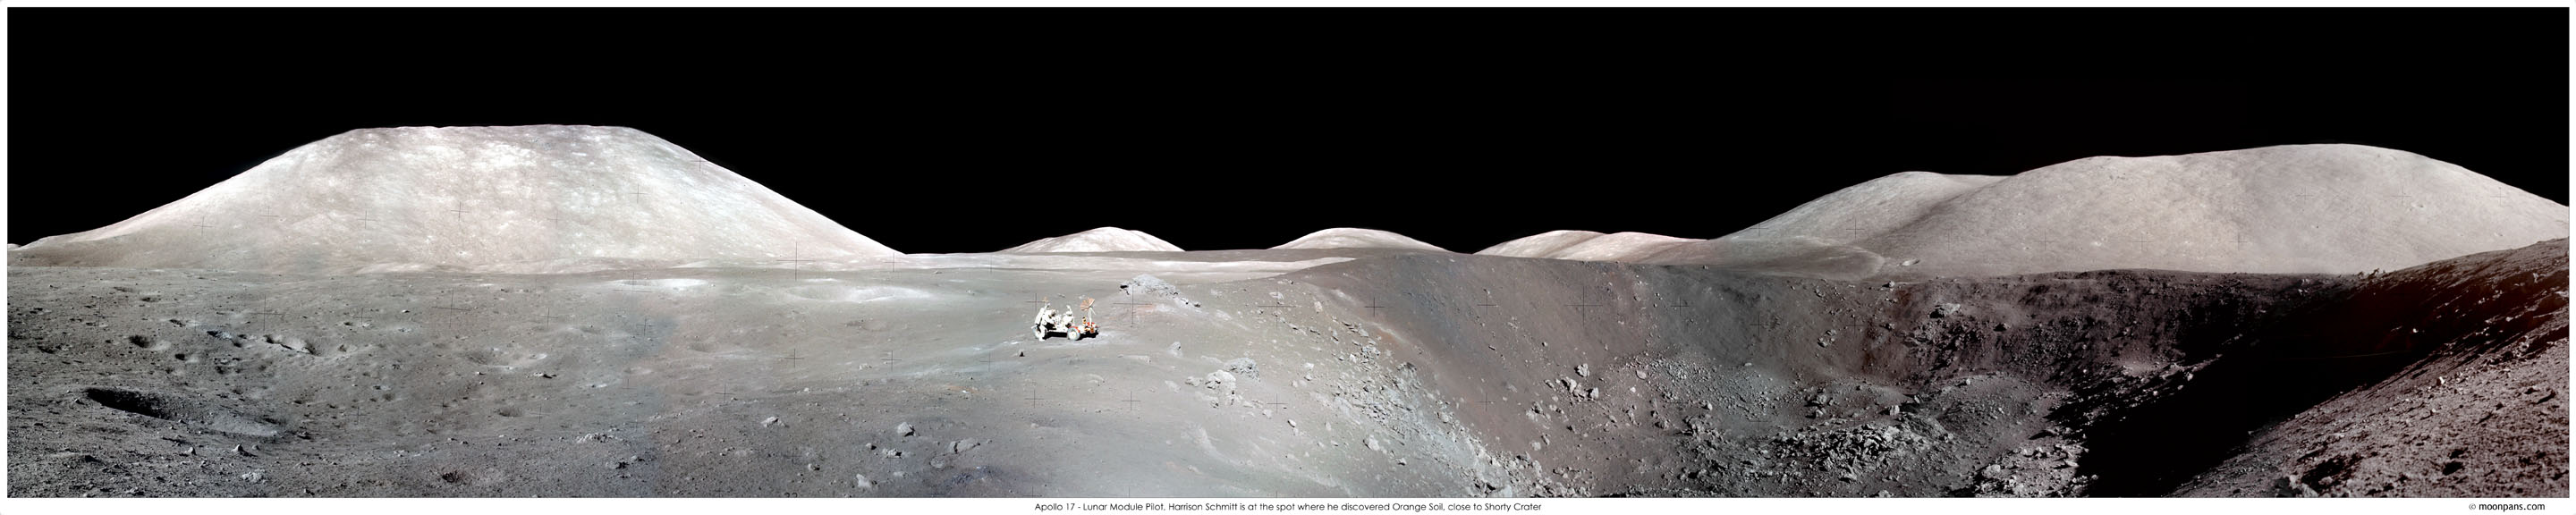 Apollo 17: Vista panorámica del cráter Shorty